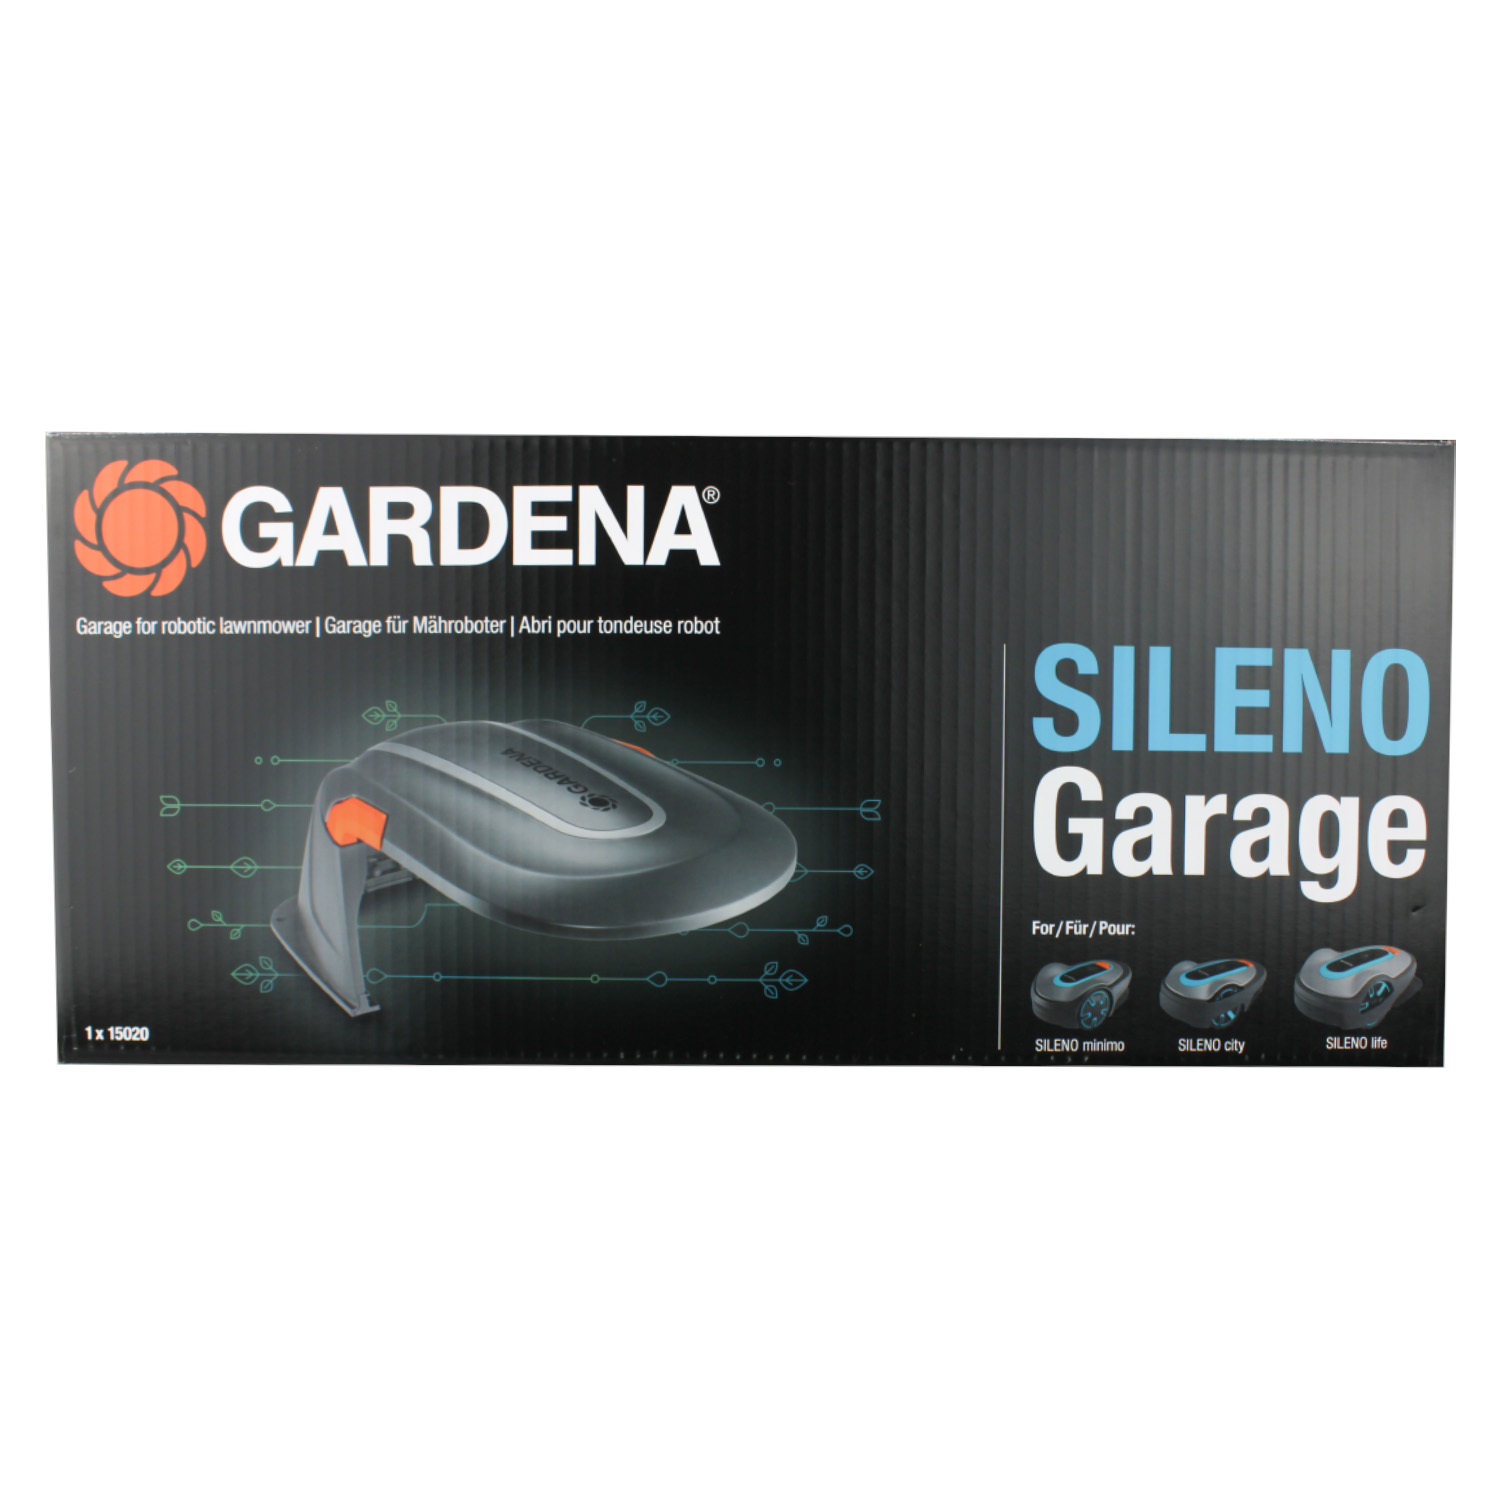 Gardena Garage für Sileno city / Sileno life  / Sileno minimo Mähroboter 15020-20